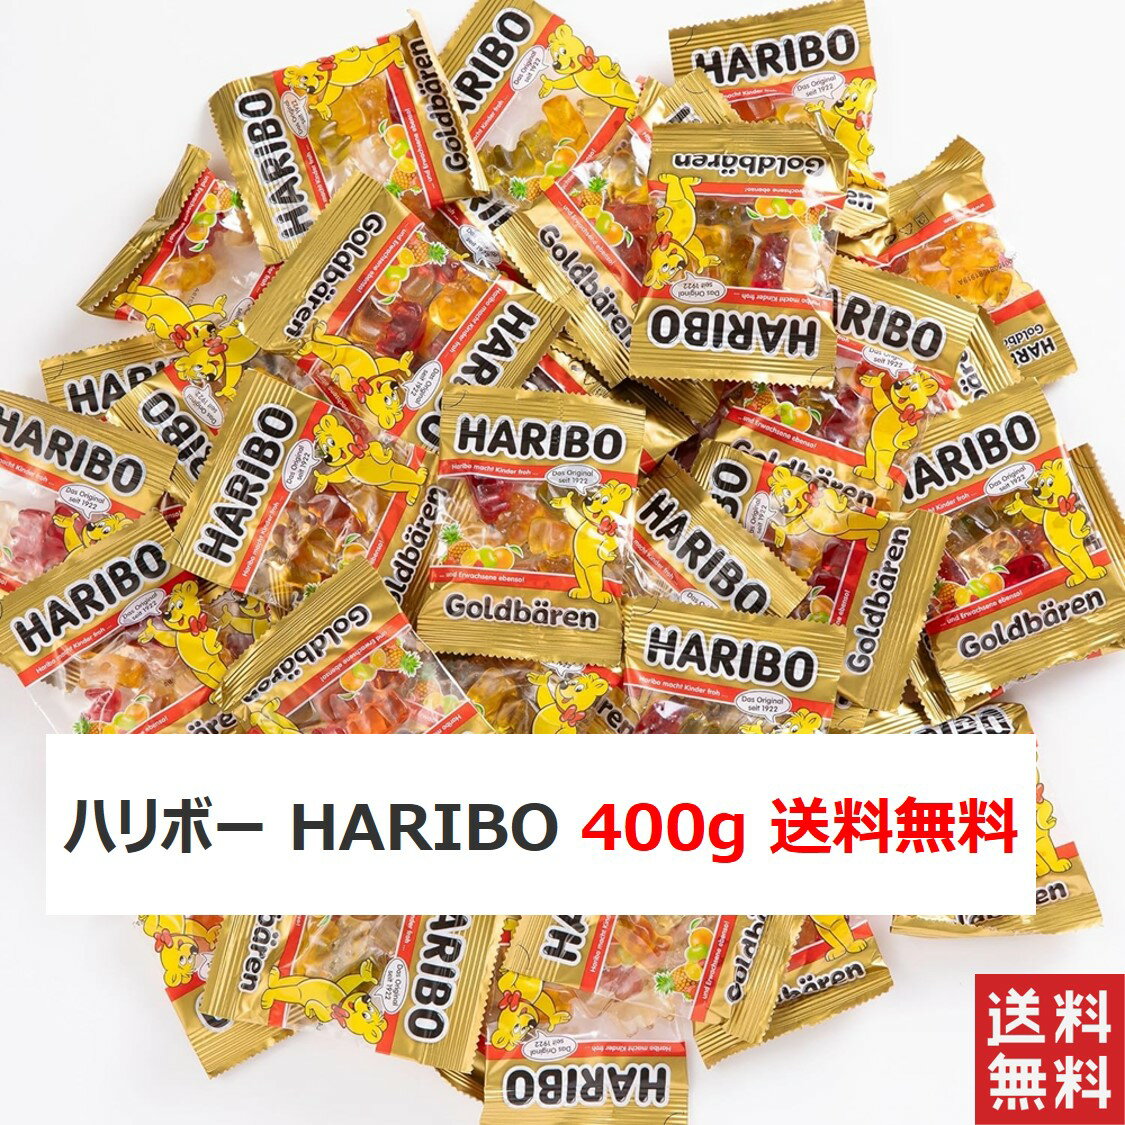 ハリボー HARIBO 400g ミニゴールドベア グミ キャンデー アメ あめ お菓子 送料無料